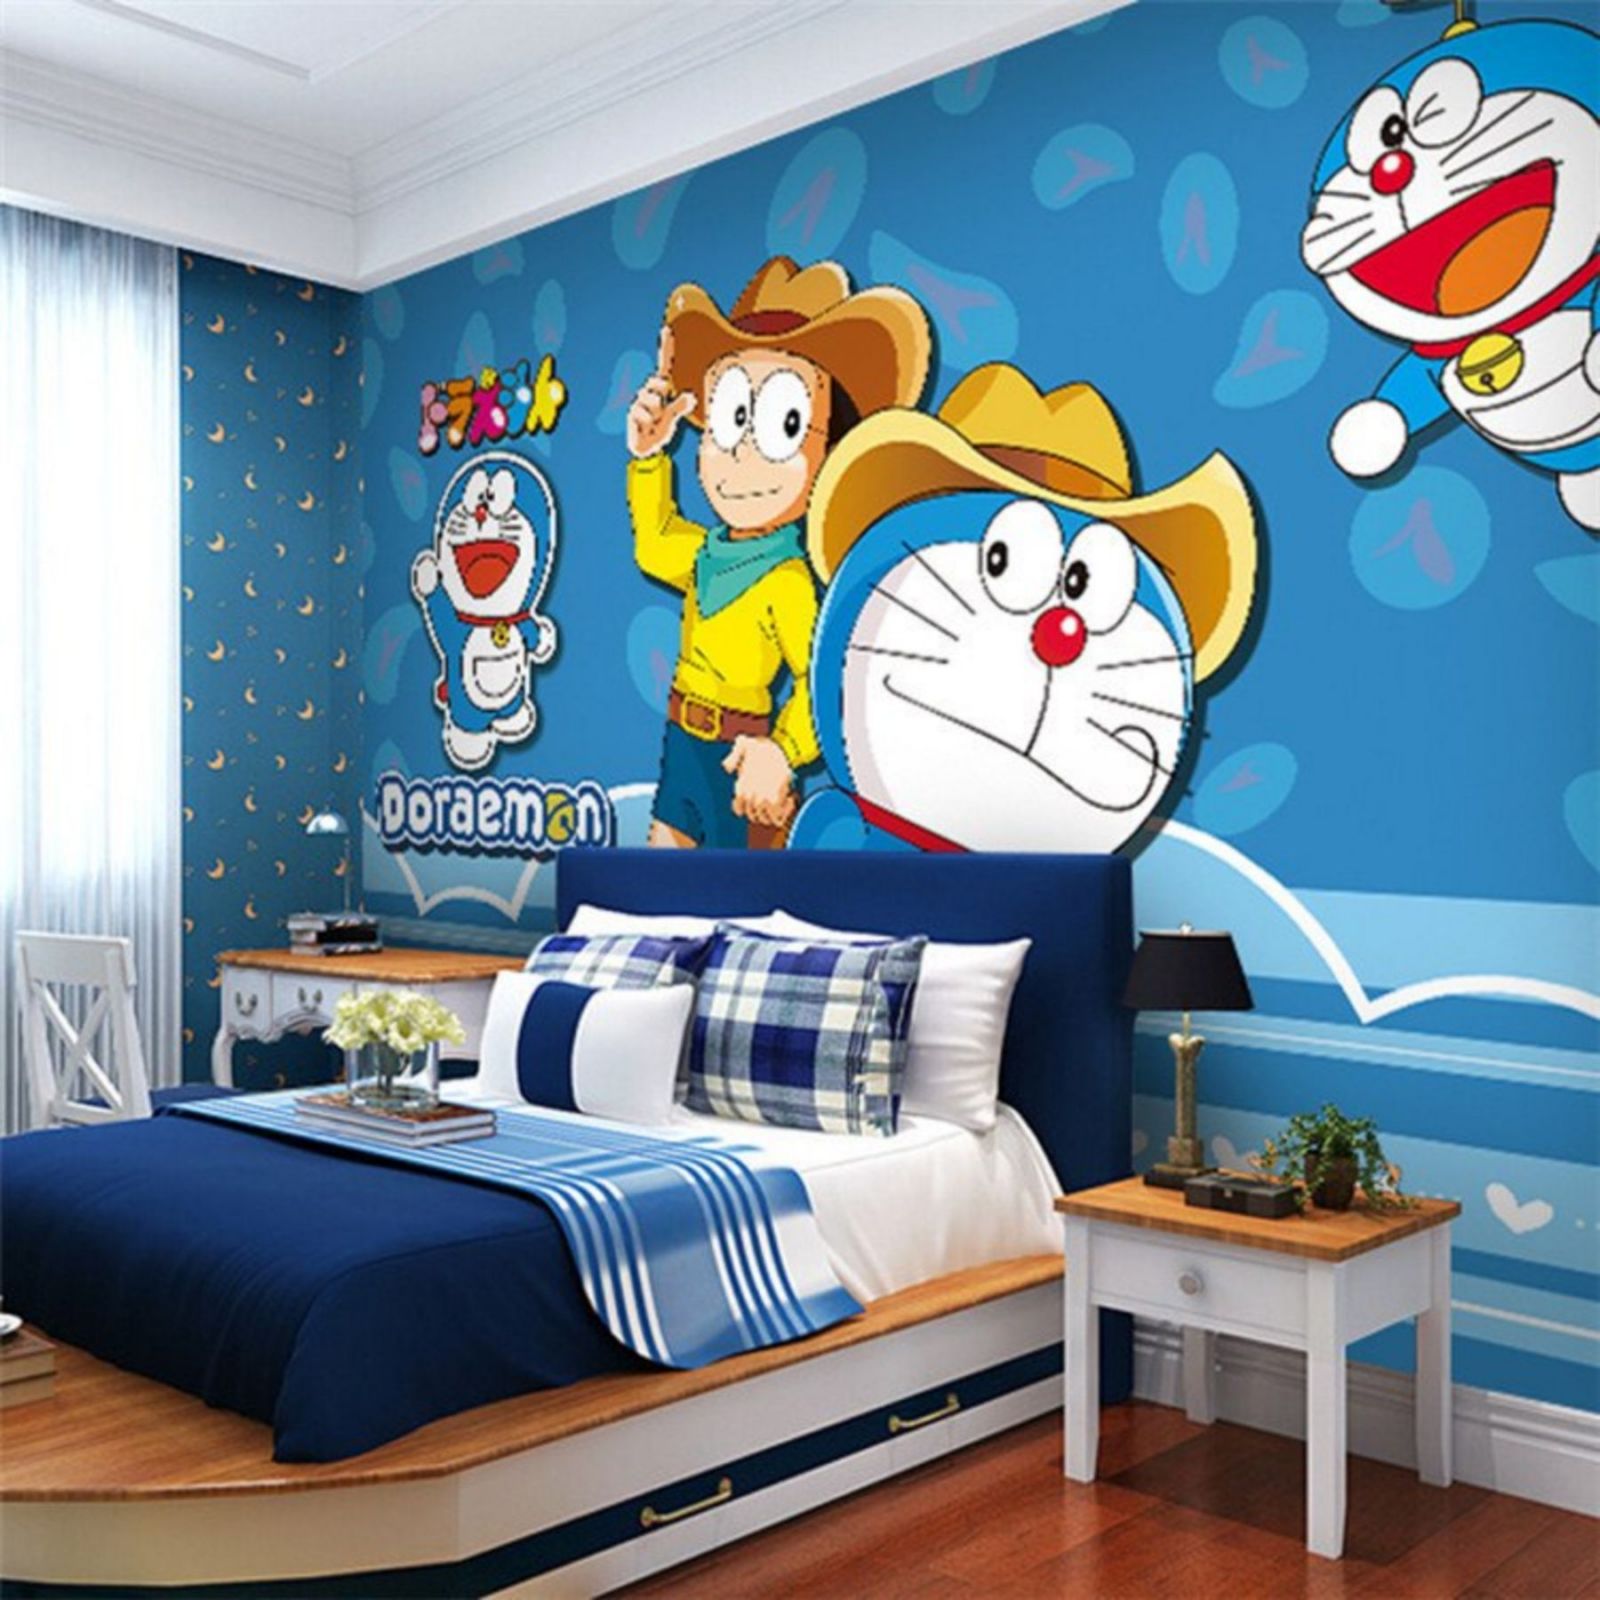 Bạn đam mê thế giới Doremon và muốn trang trí phòng ngủ của mình theo phong cách này? Hãy xem những hình ảnh trang trí phòng ngủ Doremon đầy sáng tạo để tham khảo ý tưởng.